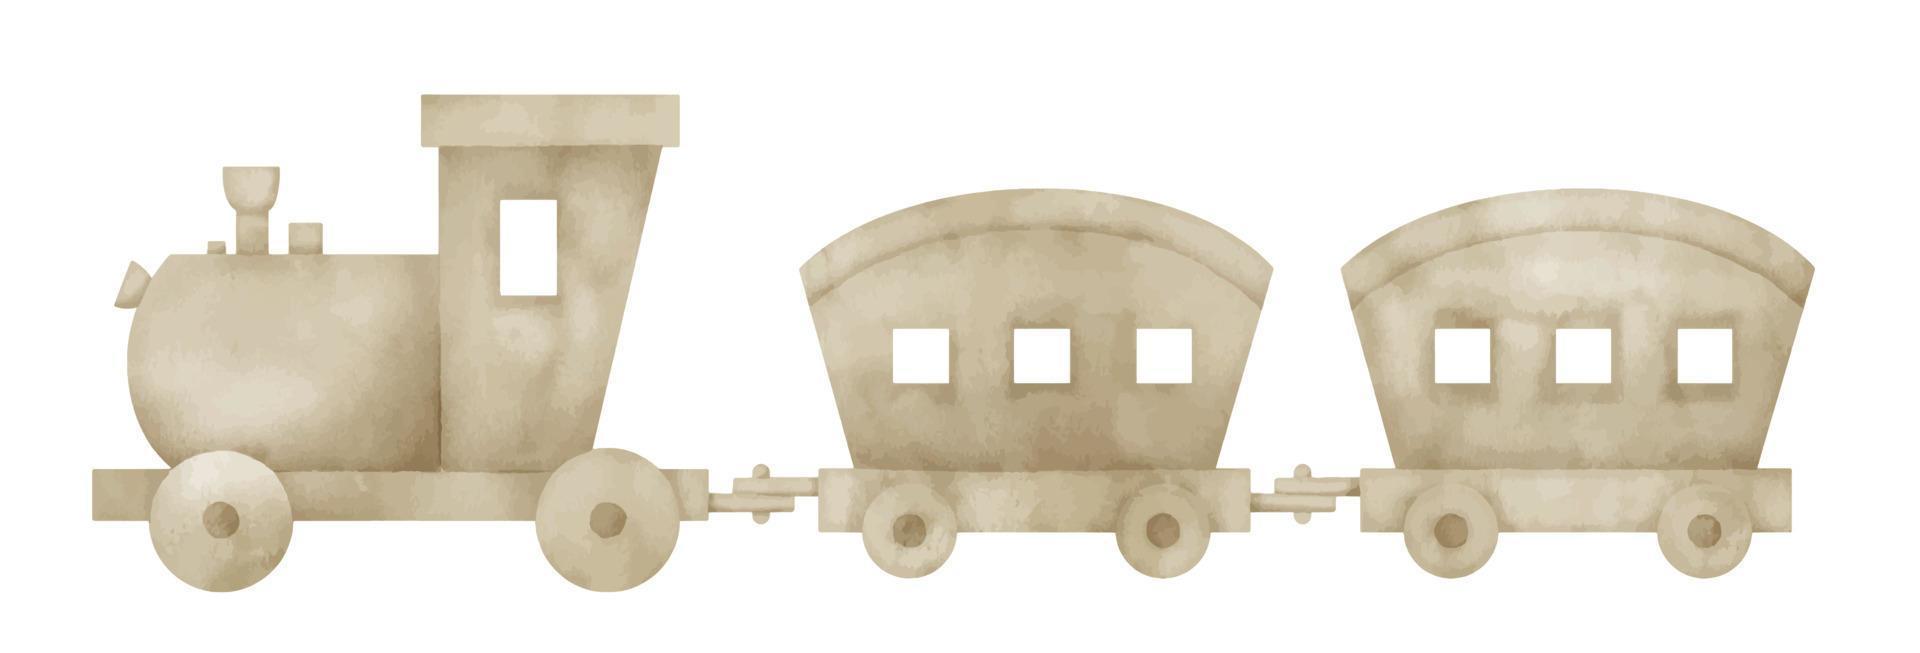 tren de juguete para bebés. acuarela dibujada a mano ilustración de vehículo para niño pequeño. transporte de madera sobre fondo aislado para tarjetas de felicitación de fiesta o invitación. dibujo de locomotora para juego de ocio vector